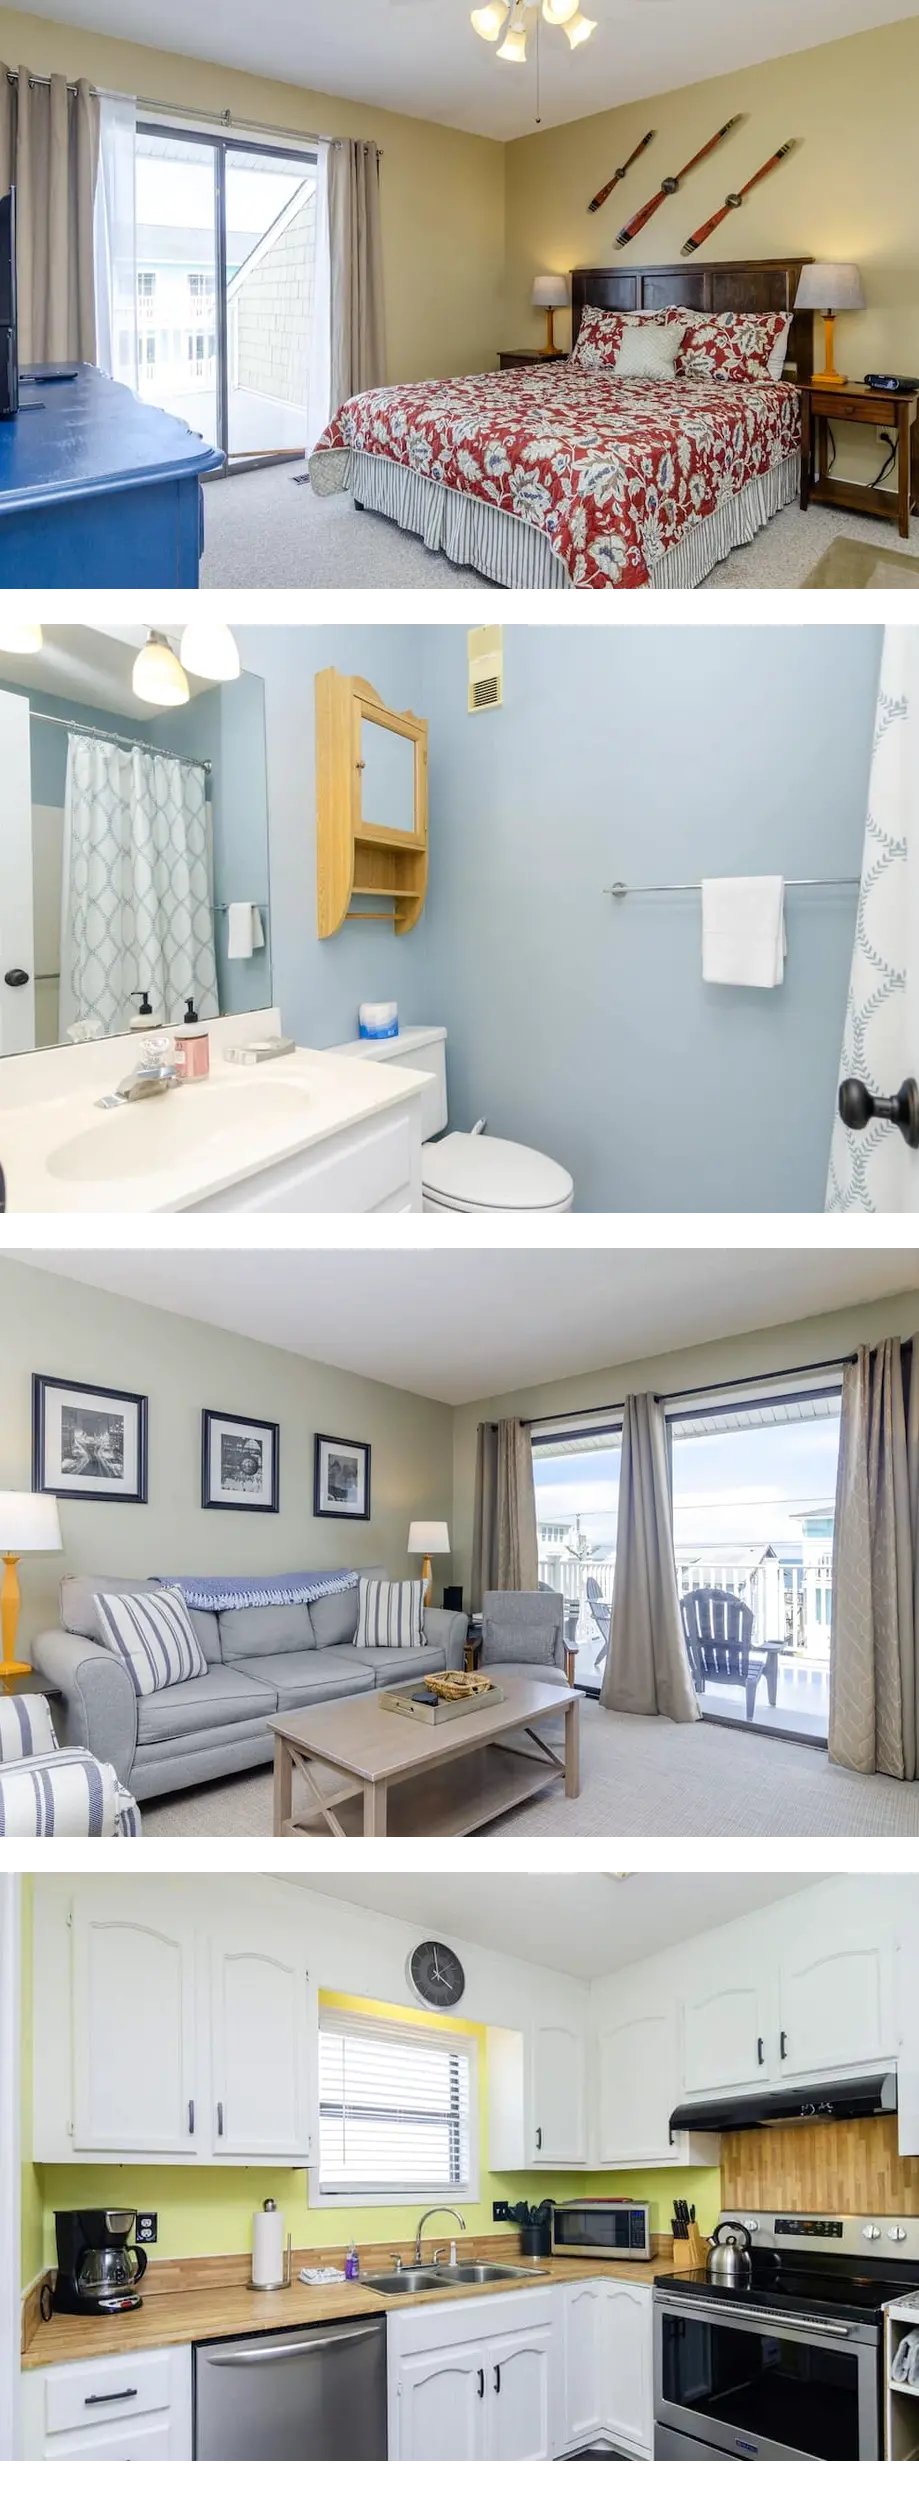 2 Bedroom Condo - Vacation rental home in Carolina Beach, NC